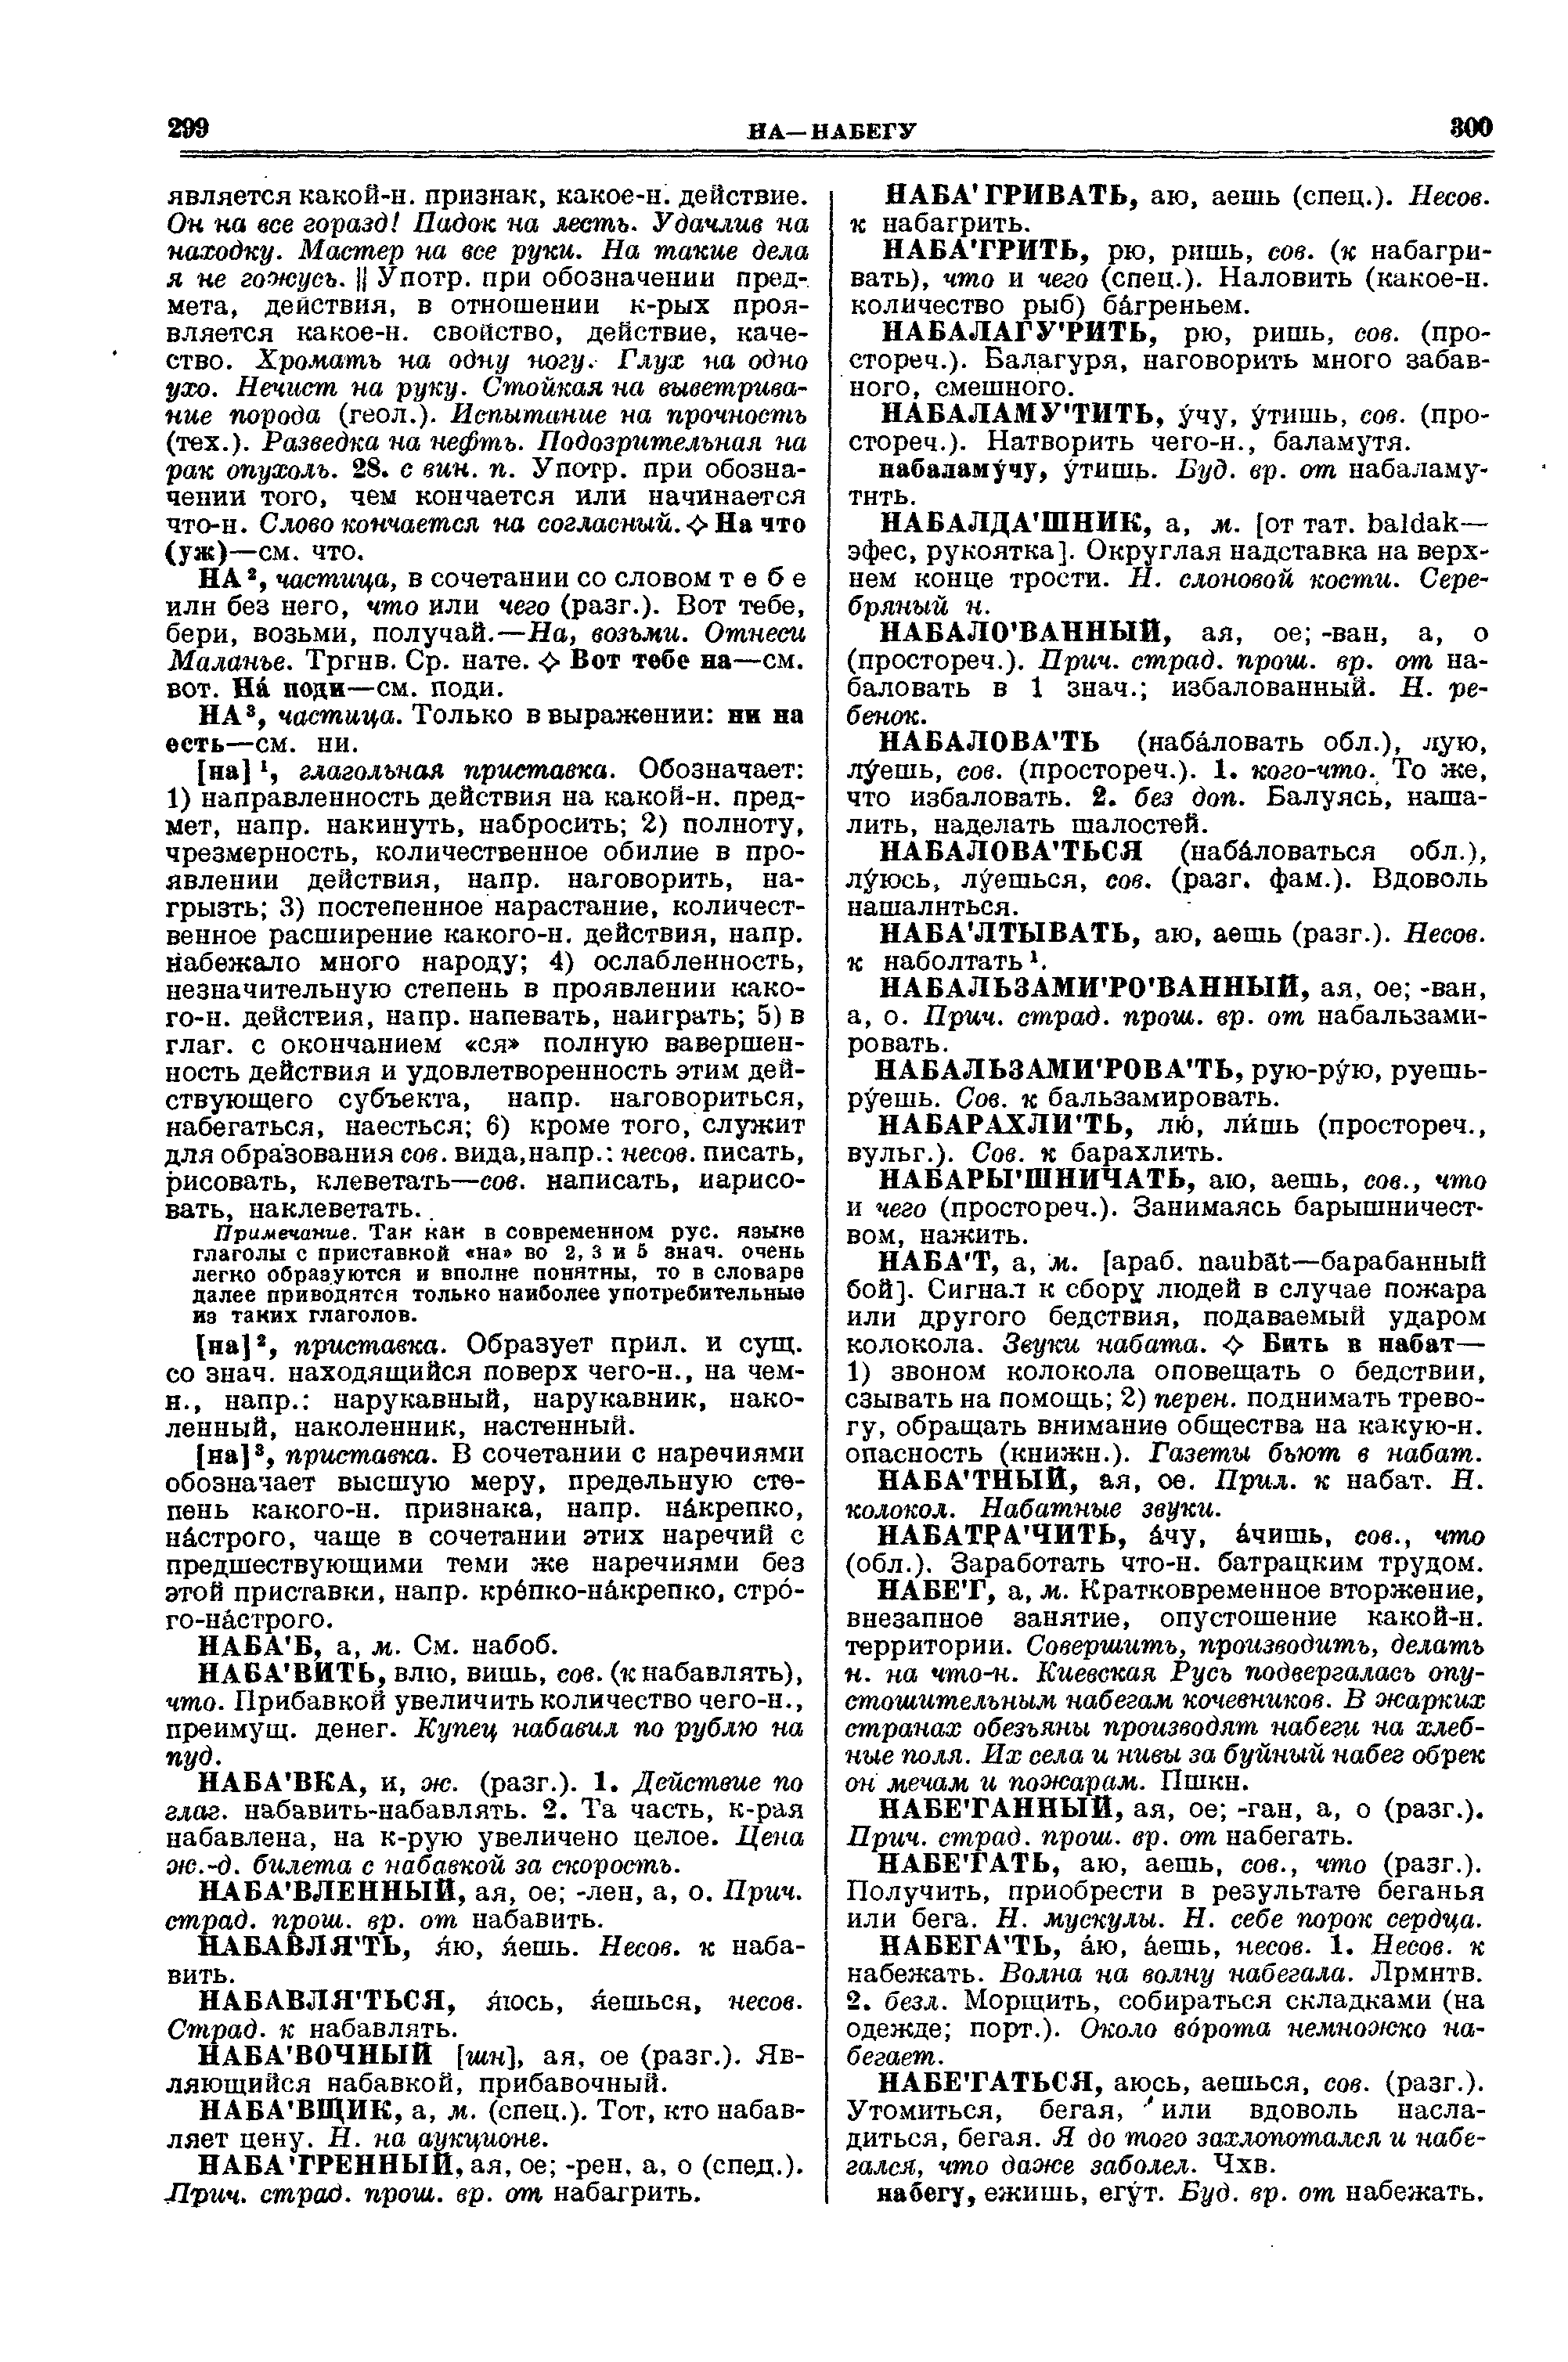 Фотокопия pdf / скан страницы 150 толкового словаря Ушакова (том 2)